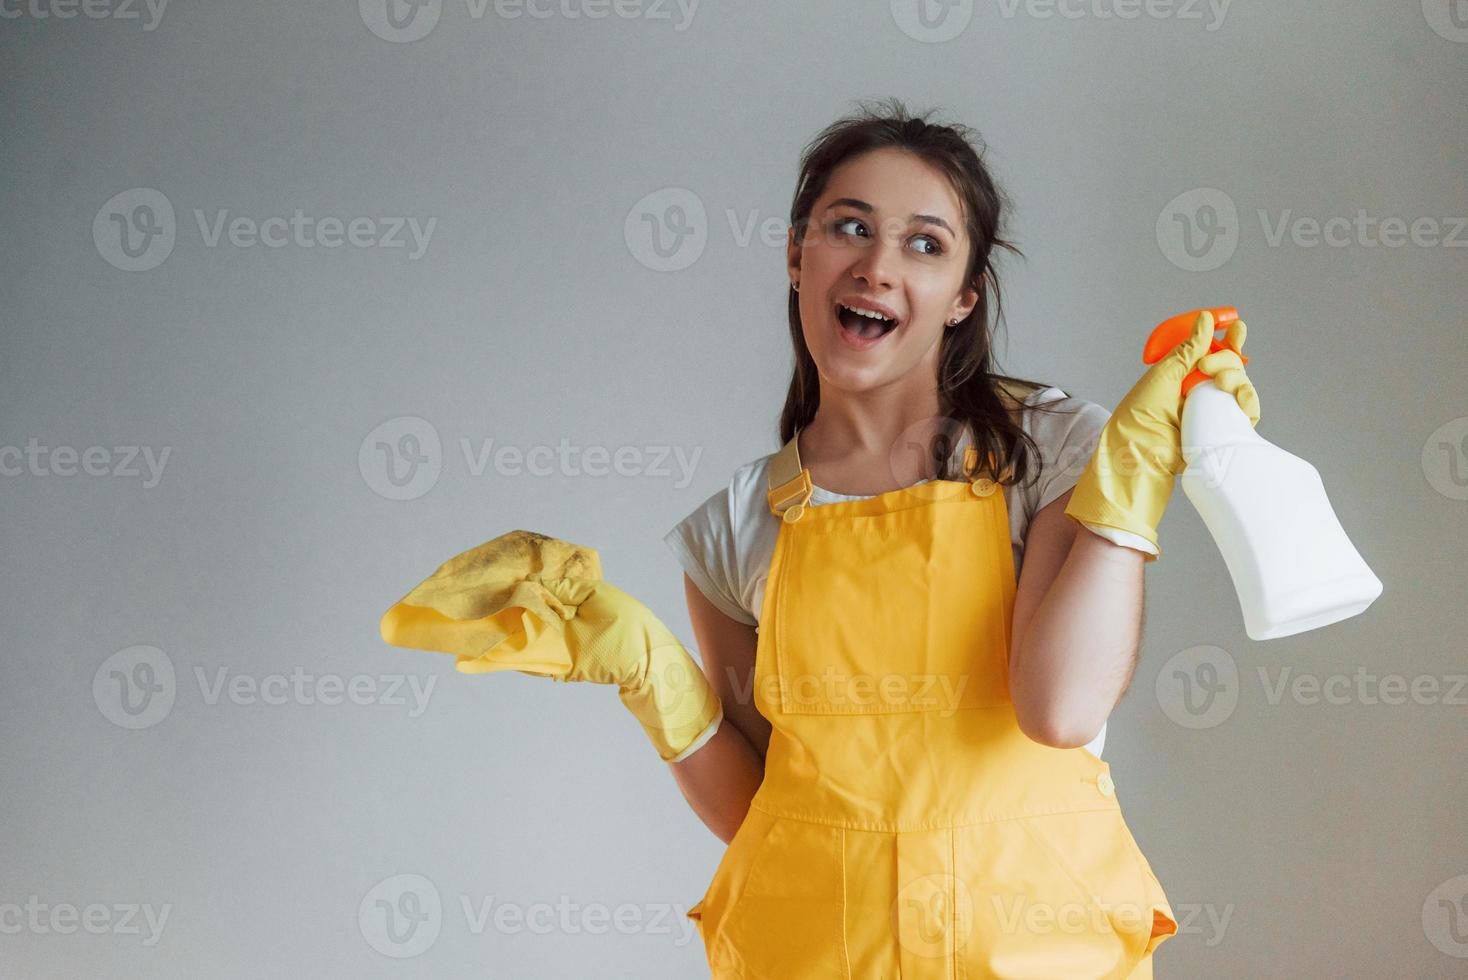 casalinga nel giallo uniforme in piedi con pulizia spray per finestre al chiuso. Casa rinnovamento concezione foto